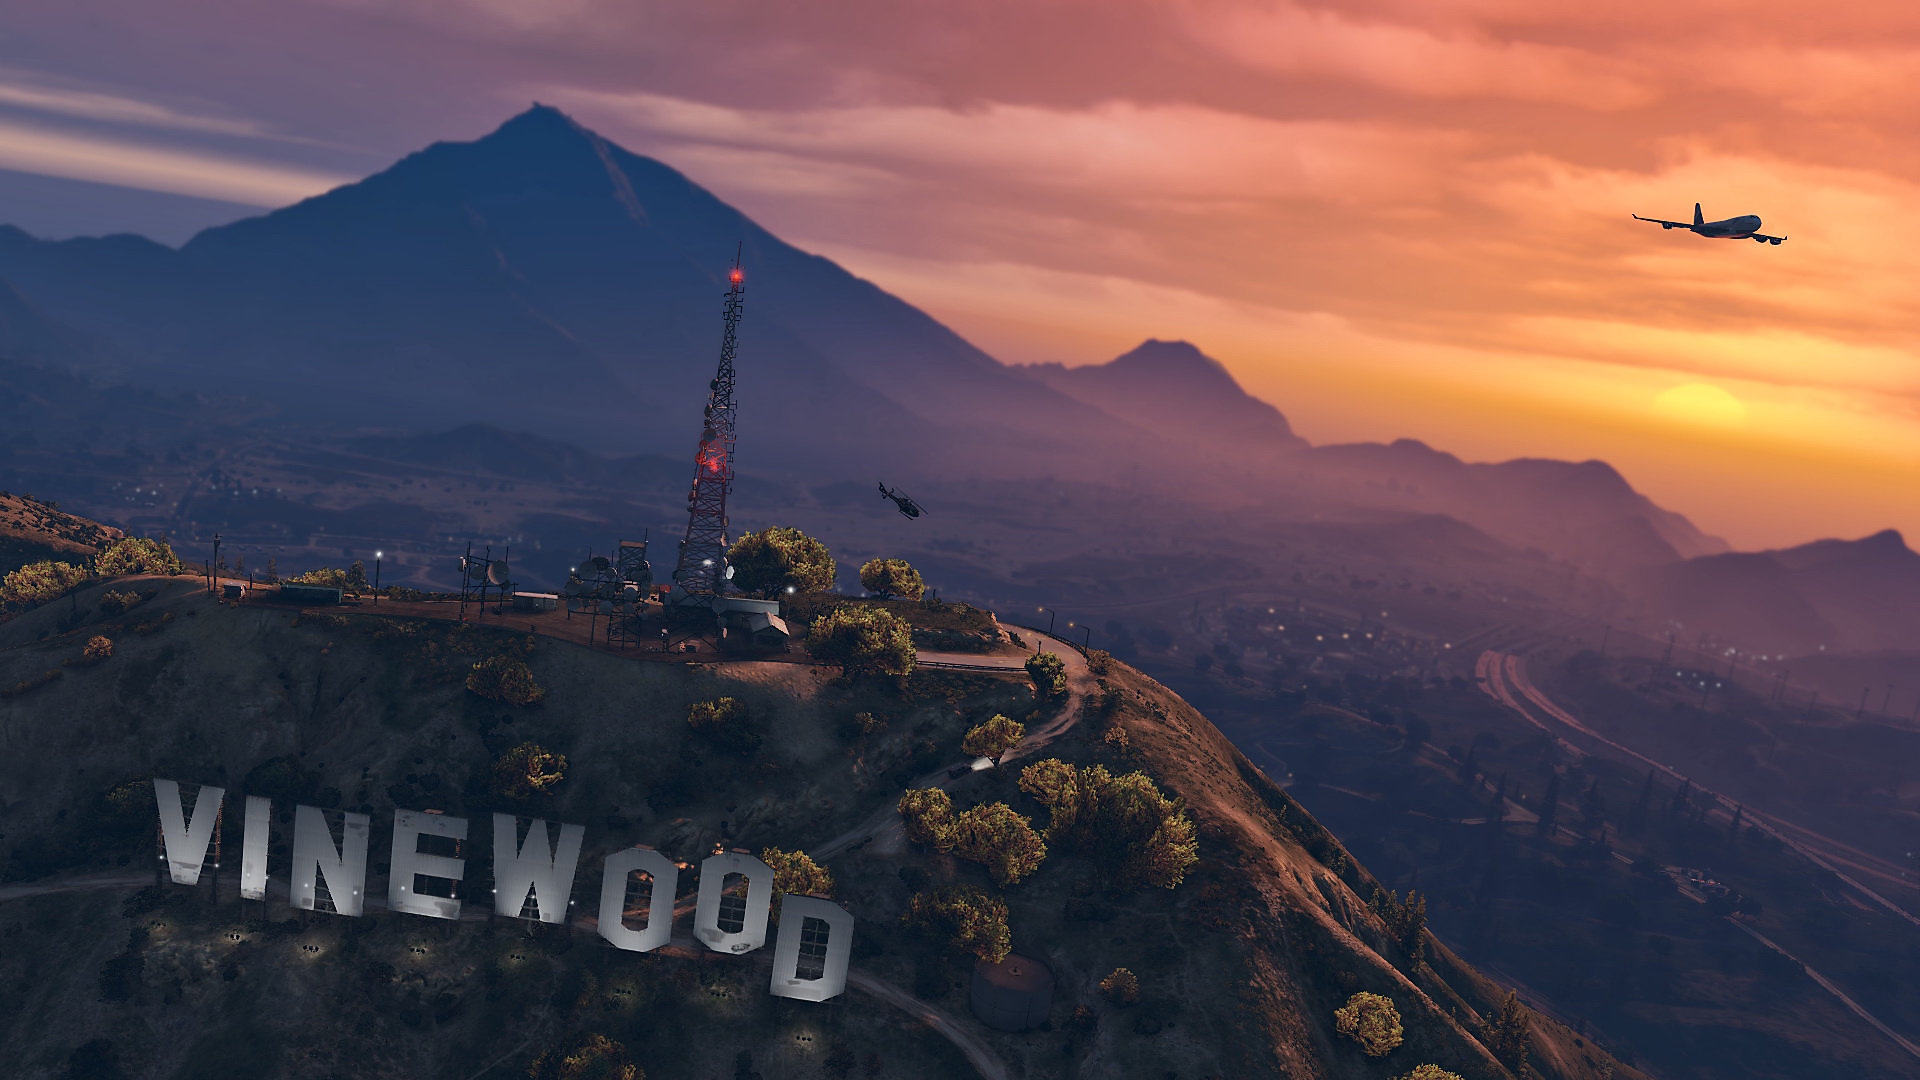 Grand Theft Auto V-képernyőkép: lenyugvó nap egy dombos táj felett, óriási betűkkel a „Vinewood” felirat